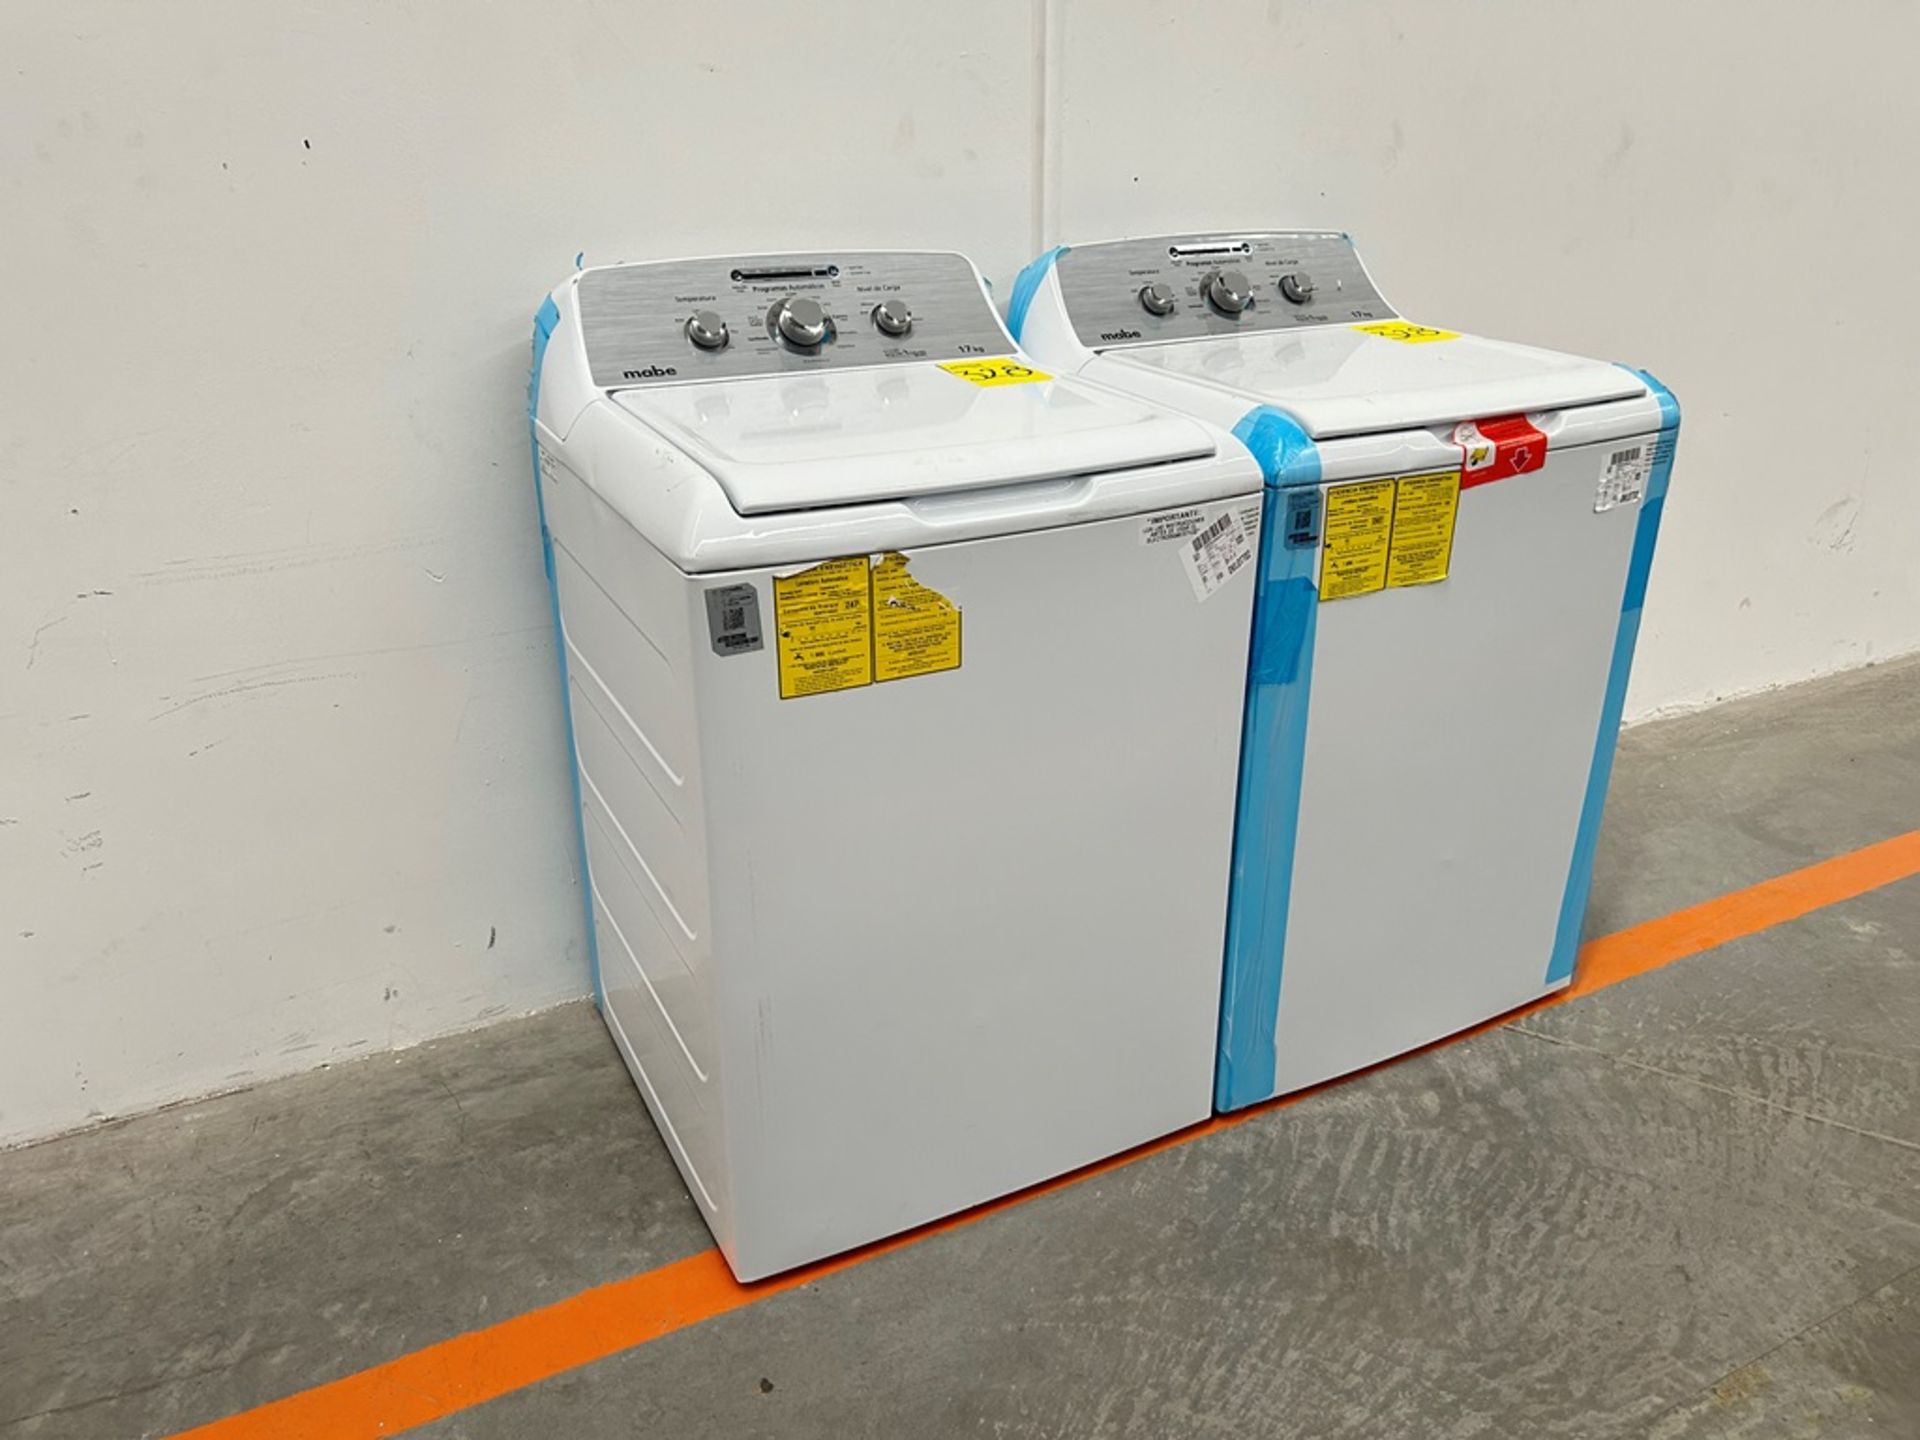 Lote de 2 lavadoras contiene: 1 Lavadora de 17 KG Marca MABE, Modelo LMA77113CBAB04, Serie S91208, - Image 2 of 10